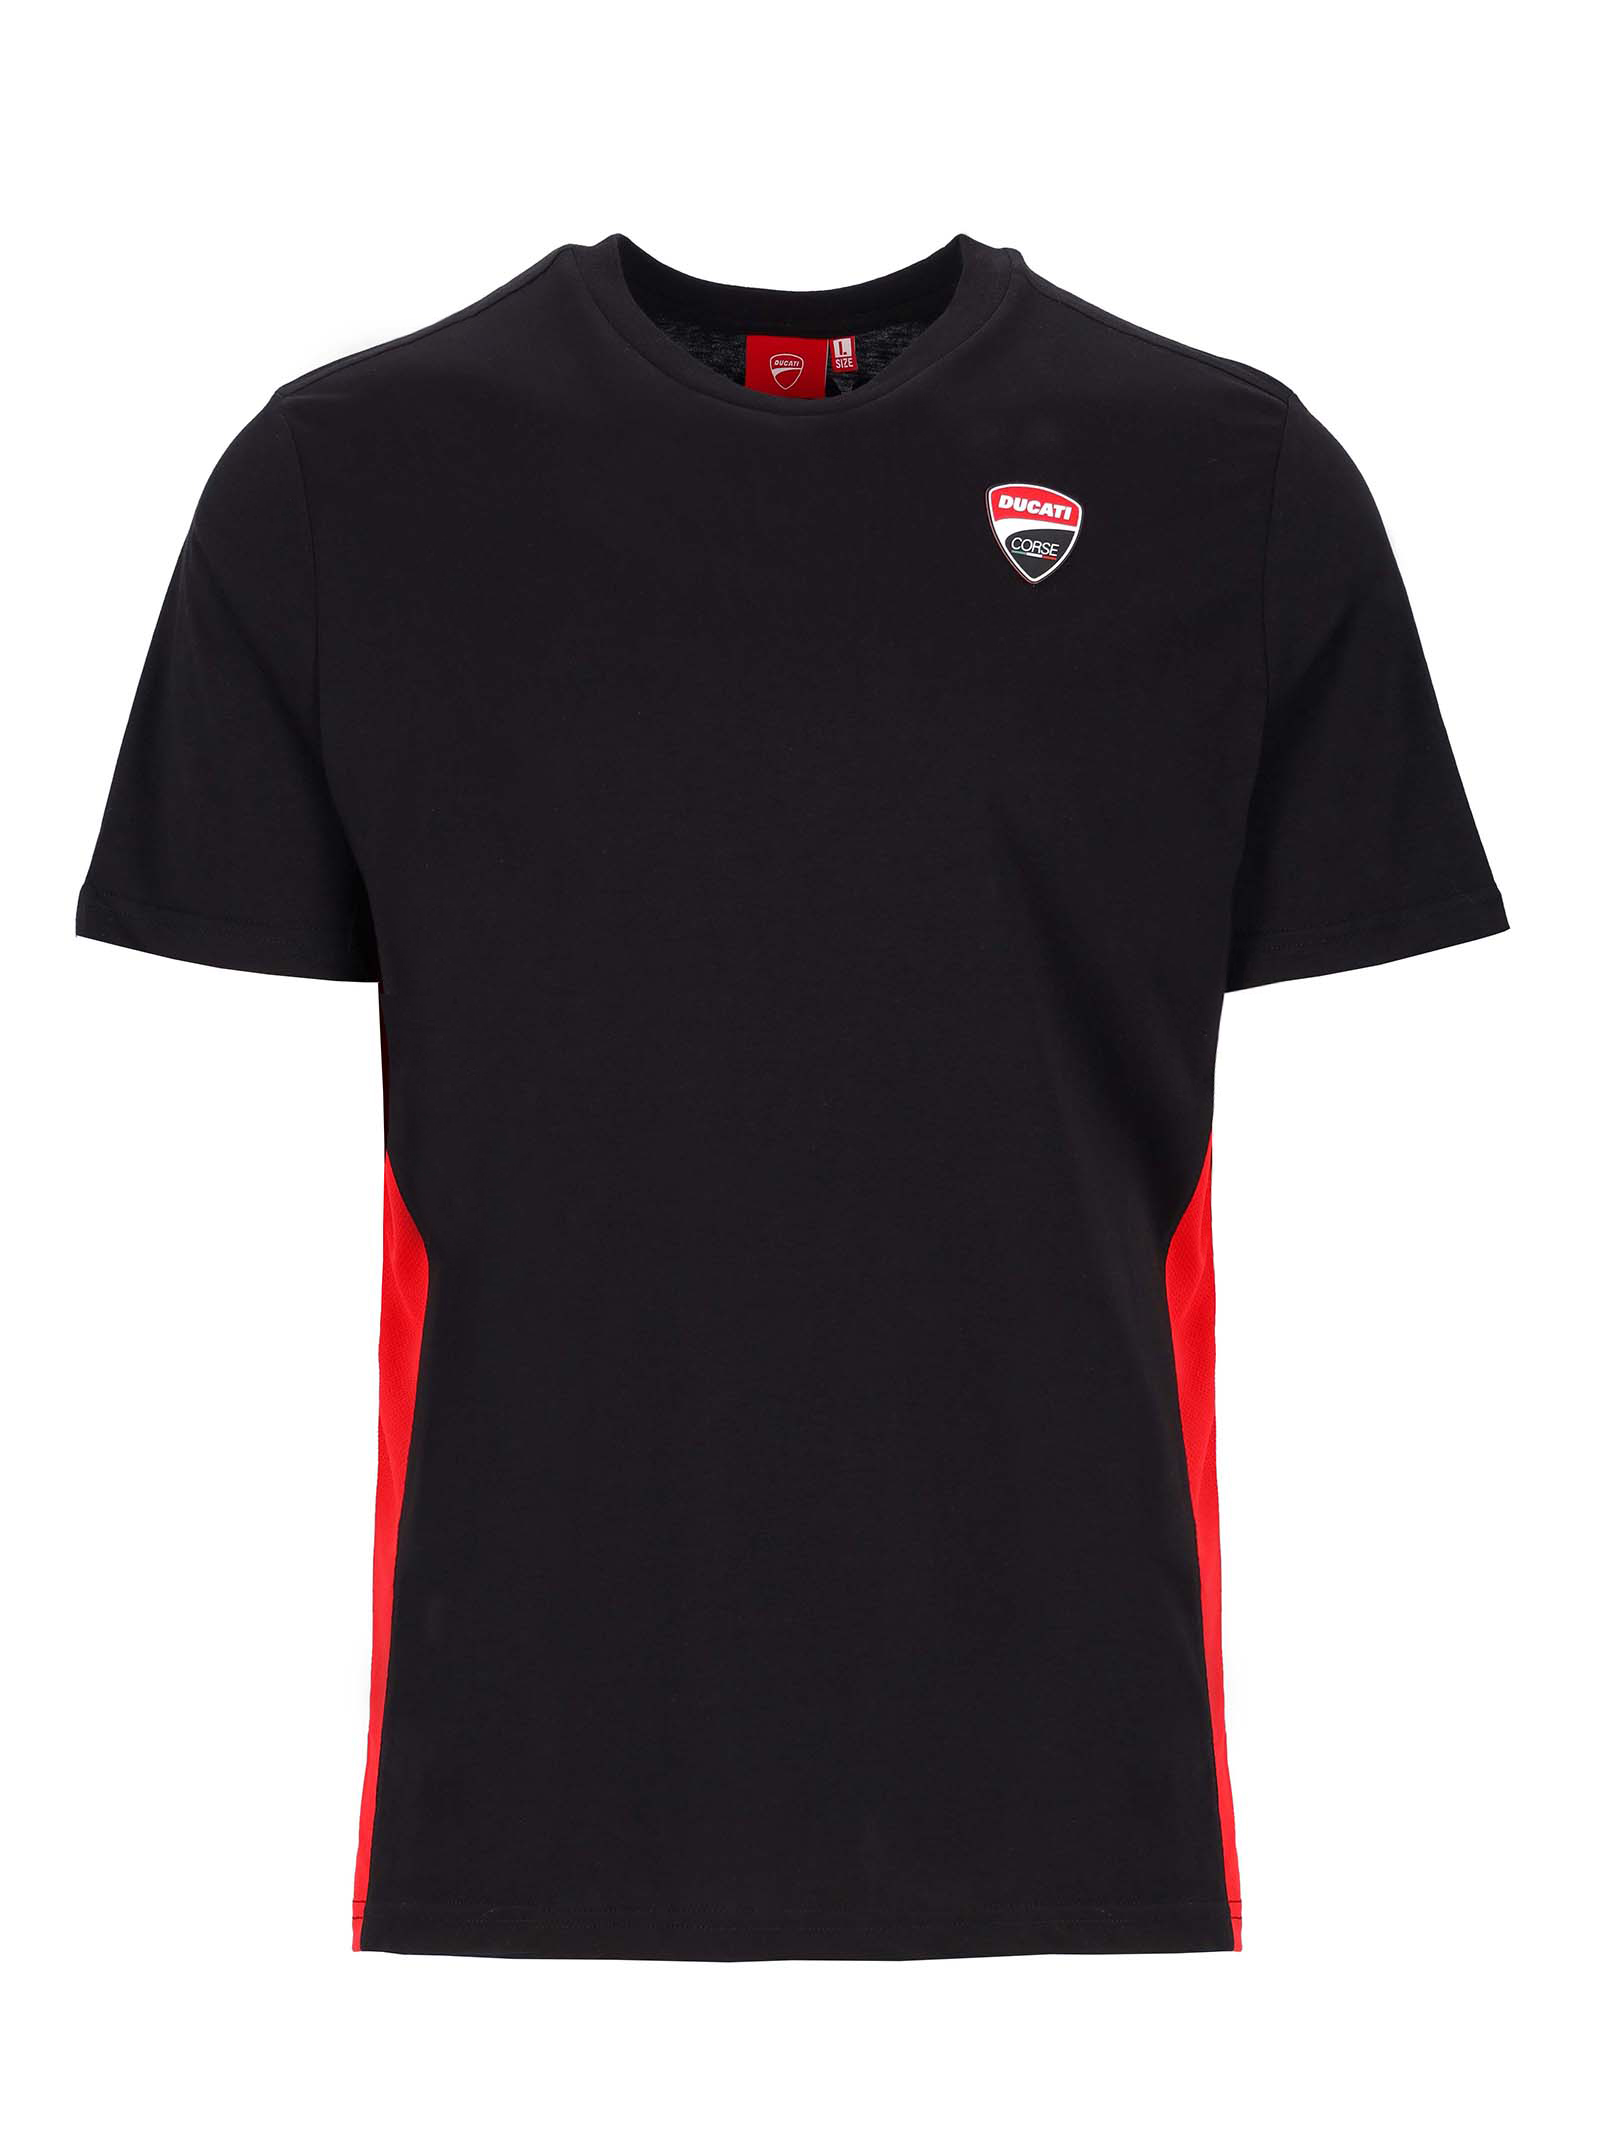 T-shirt Ducati Corse noir avec insert rouge vue devant